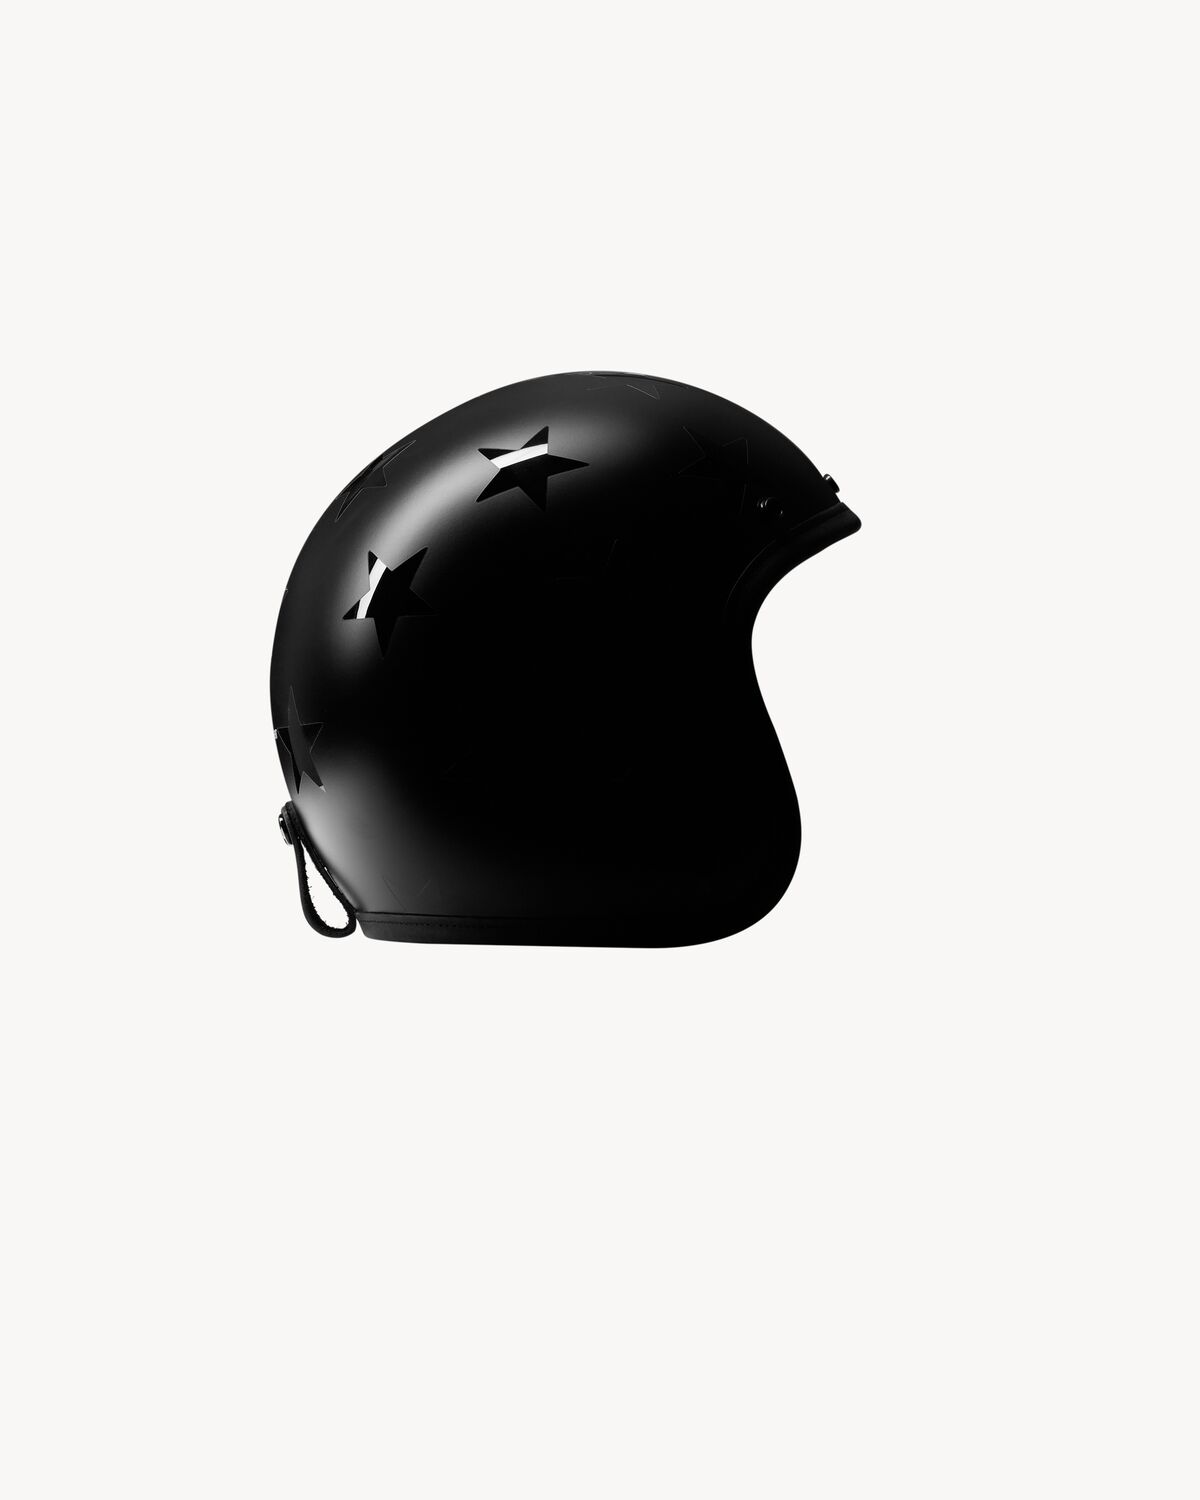 Star pattern Hedon Motorcycle helmet